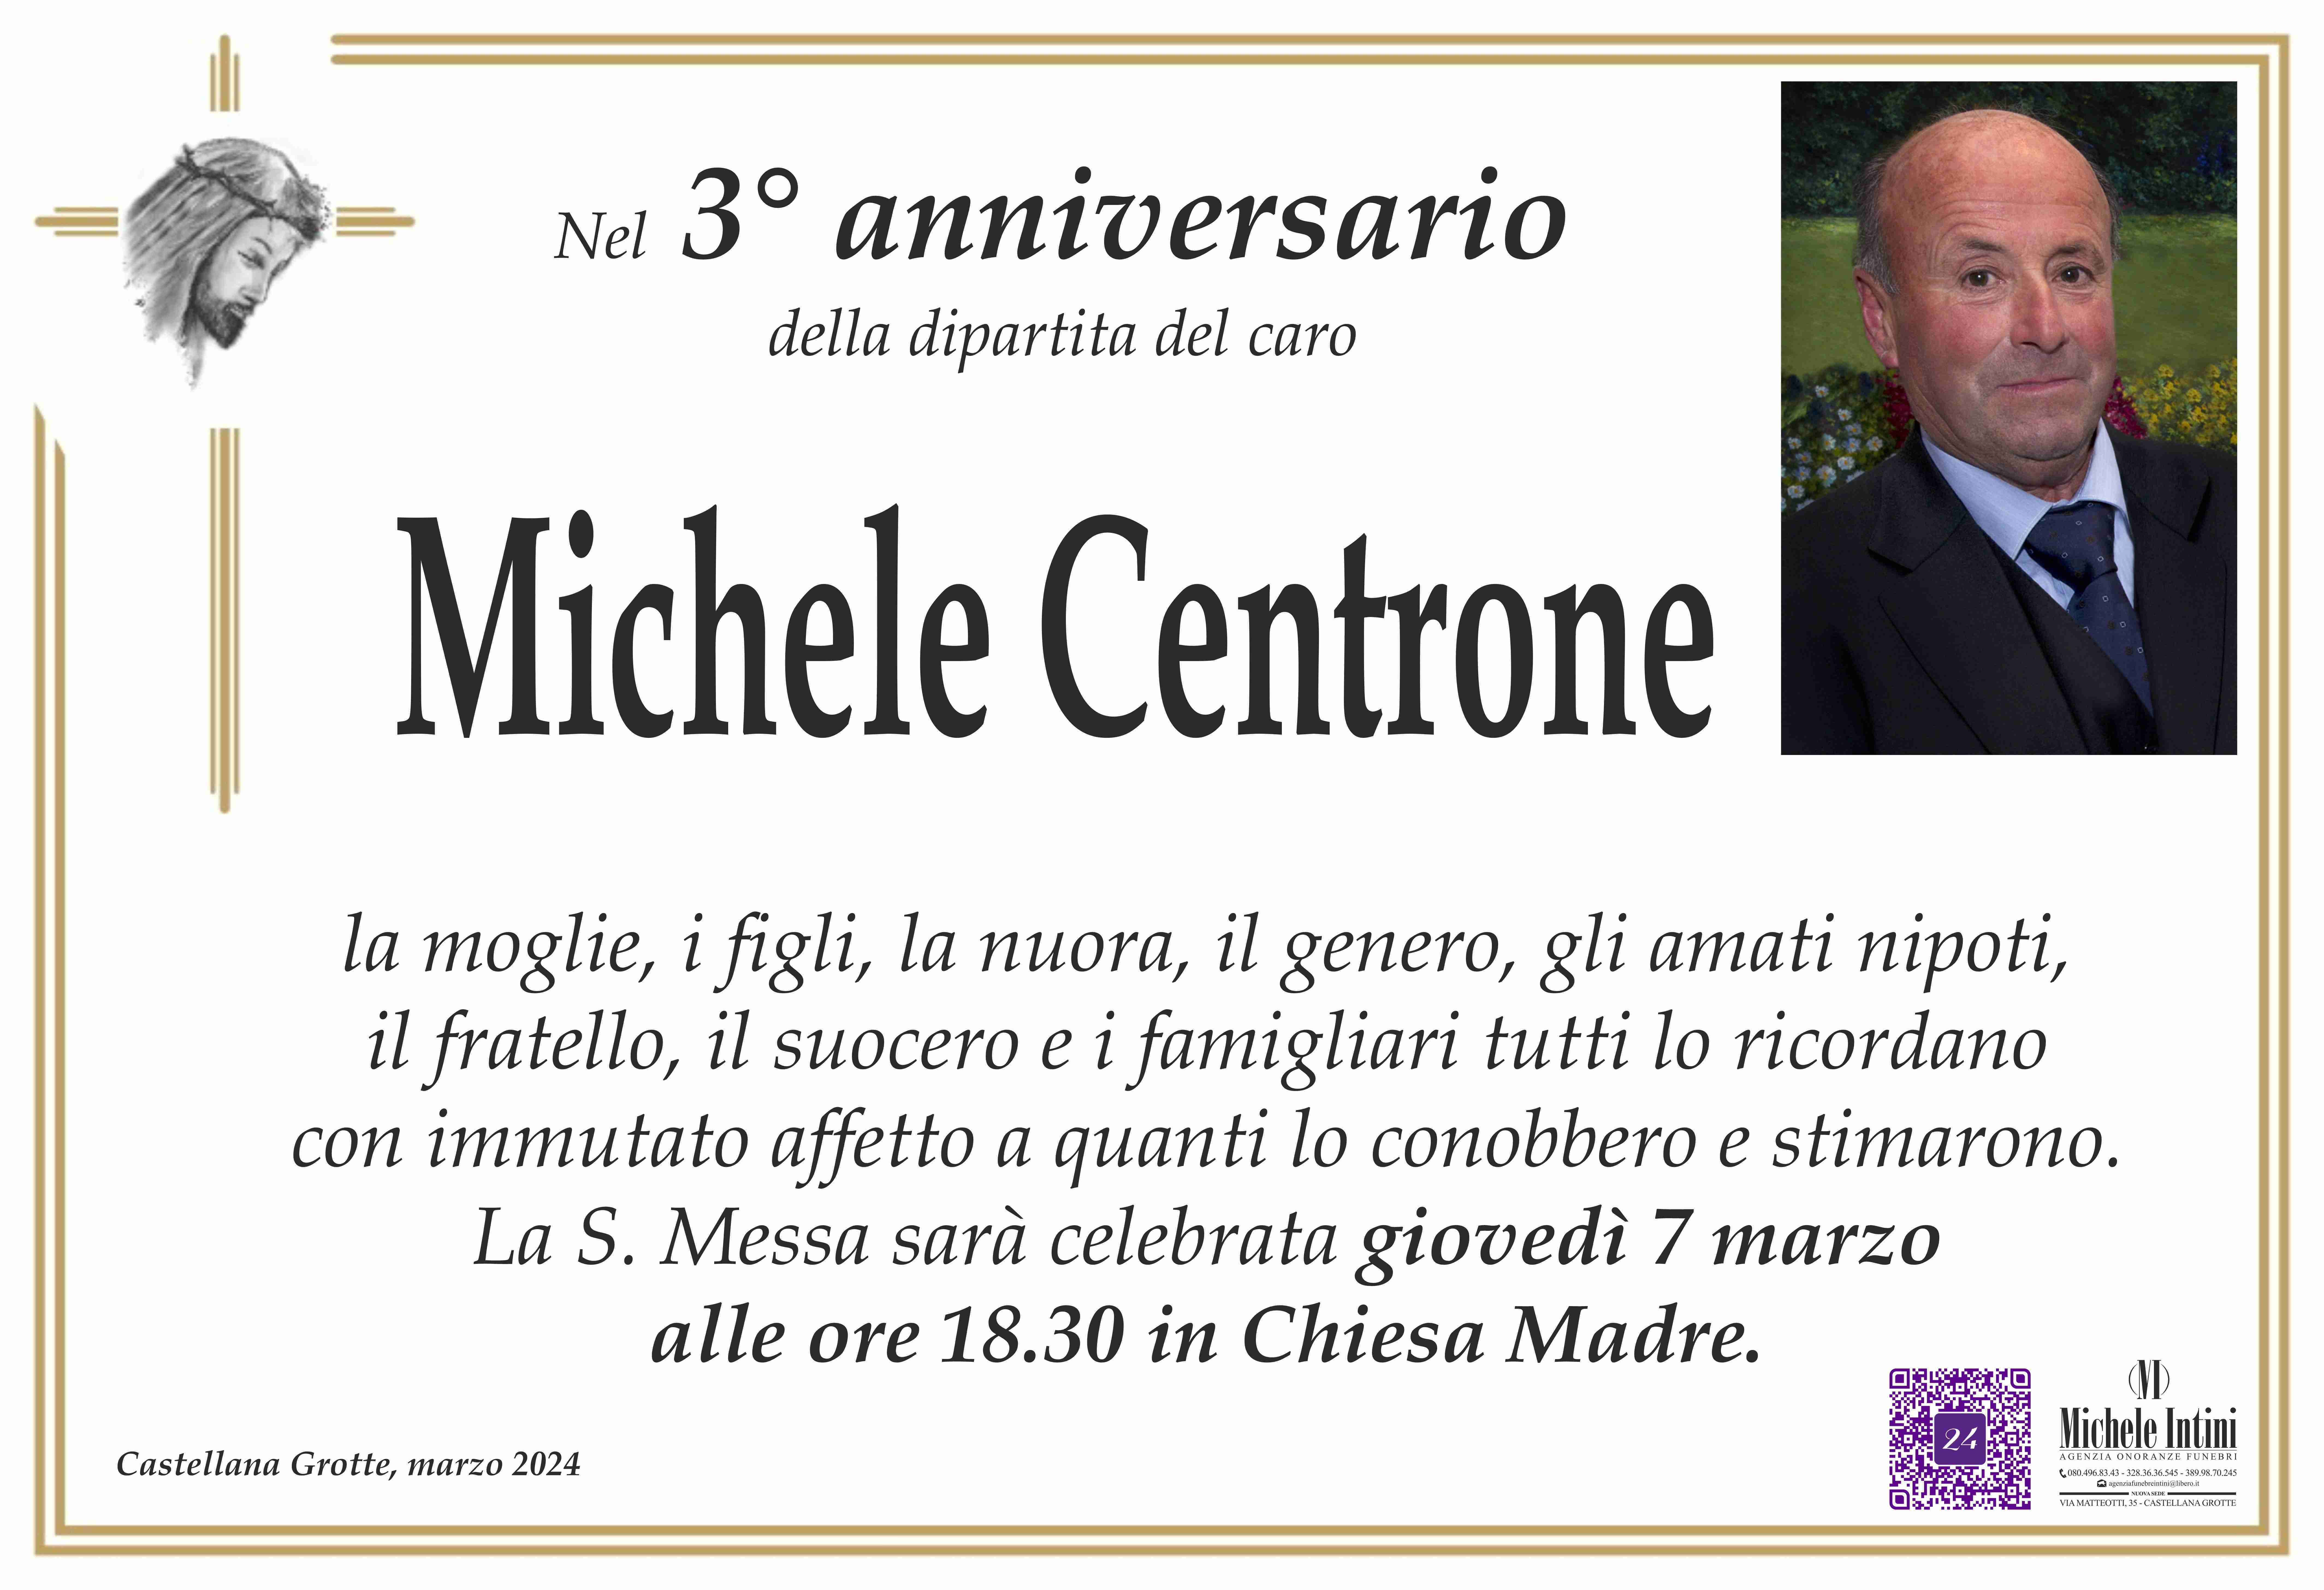 Michele Centrone